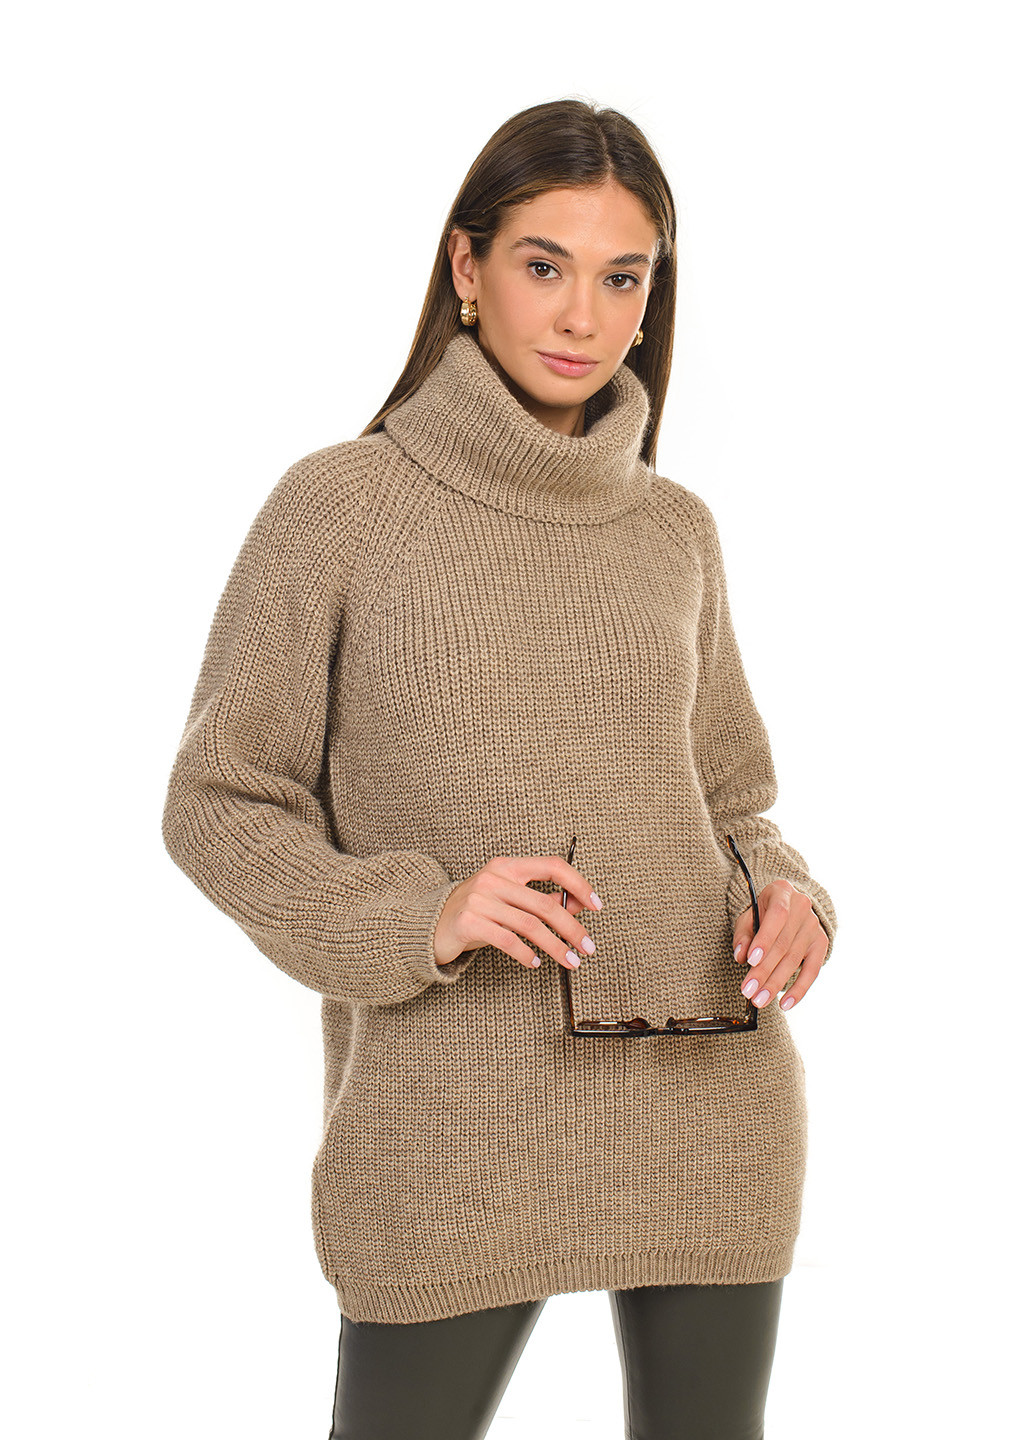 Кофейный теплый свитер крупной вязки светлая пудра SVTR